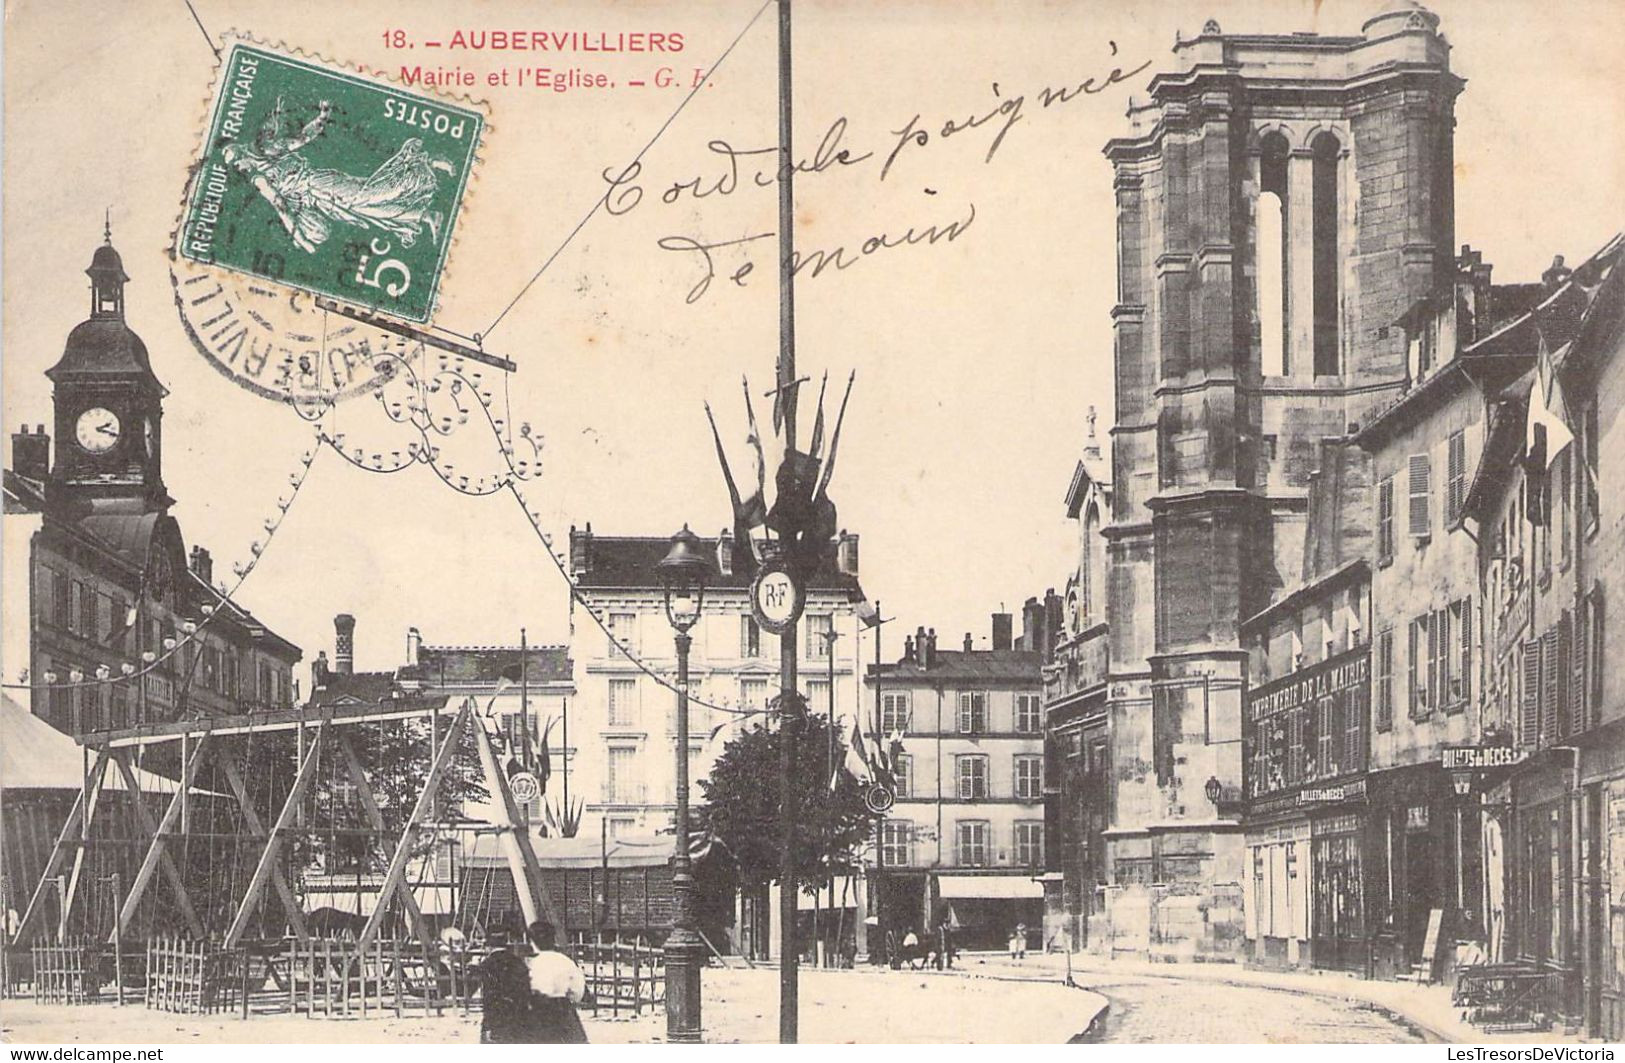 CPA France - Seine Saint Denis - Aubervilliers - La Maire Et L'Eglise - G. F. - Oblitérée Bar Le Duc 1908 - Aubervilliers